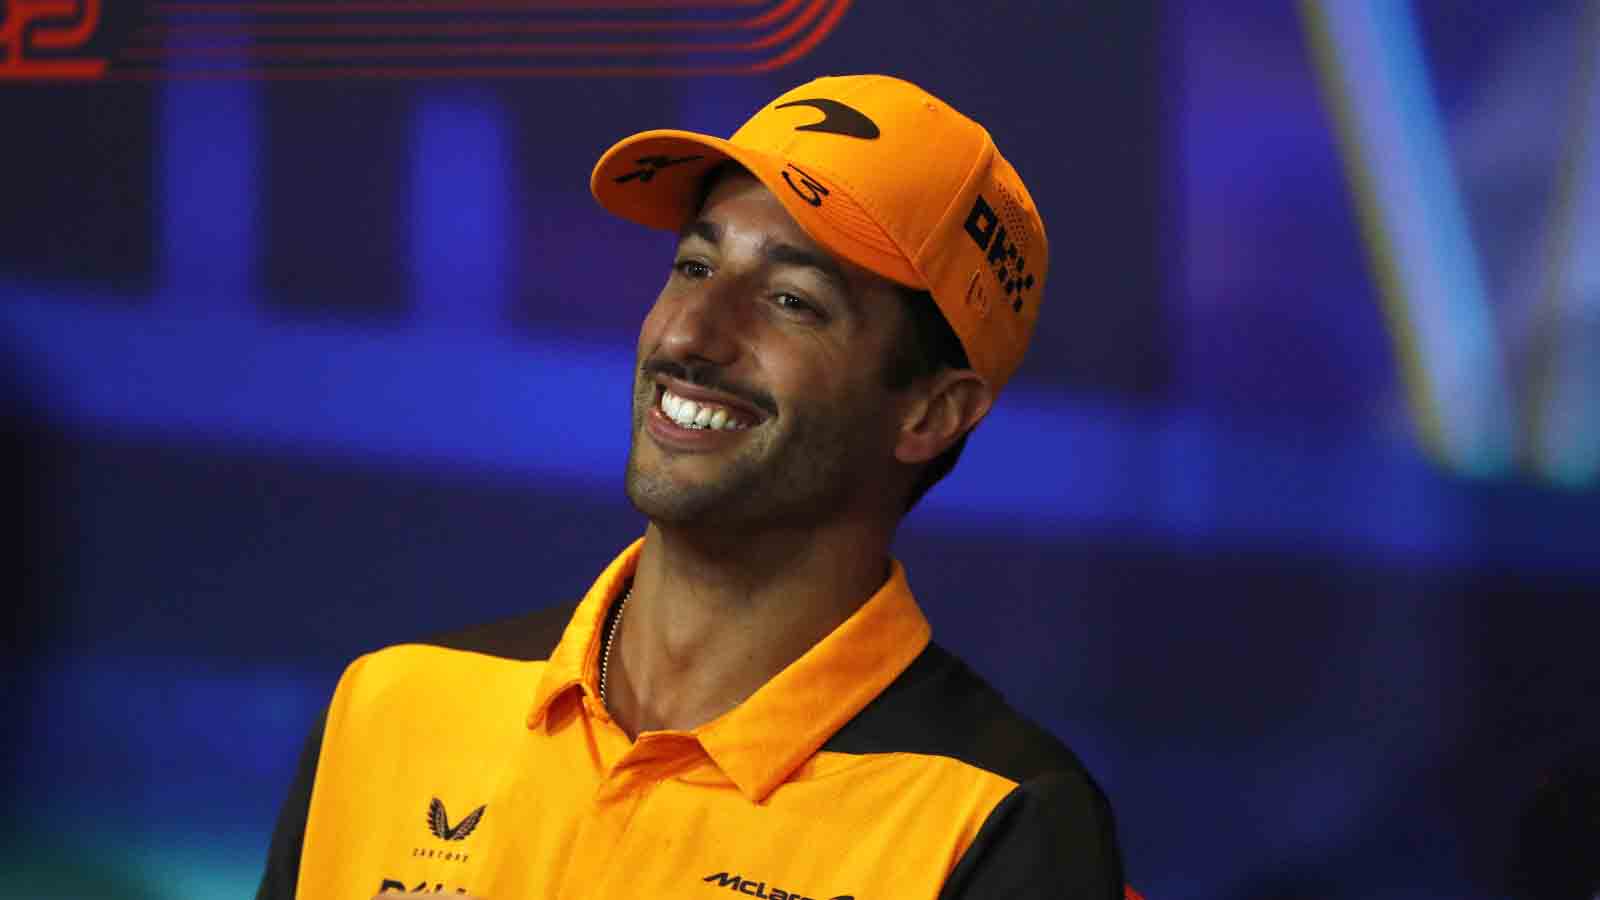 Daniel Ricciardo in the press conference. Abu Dhabi November 2022.